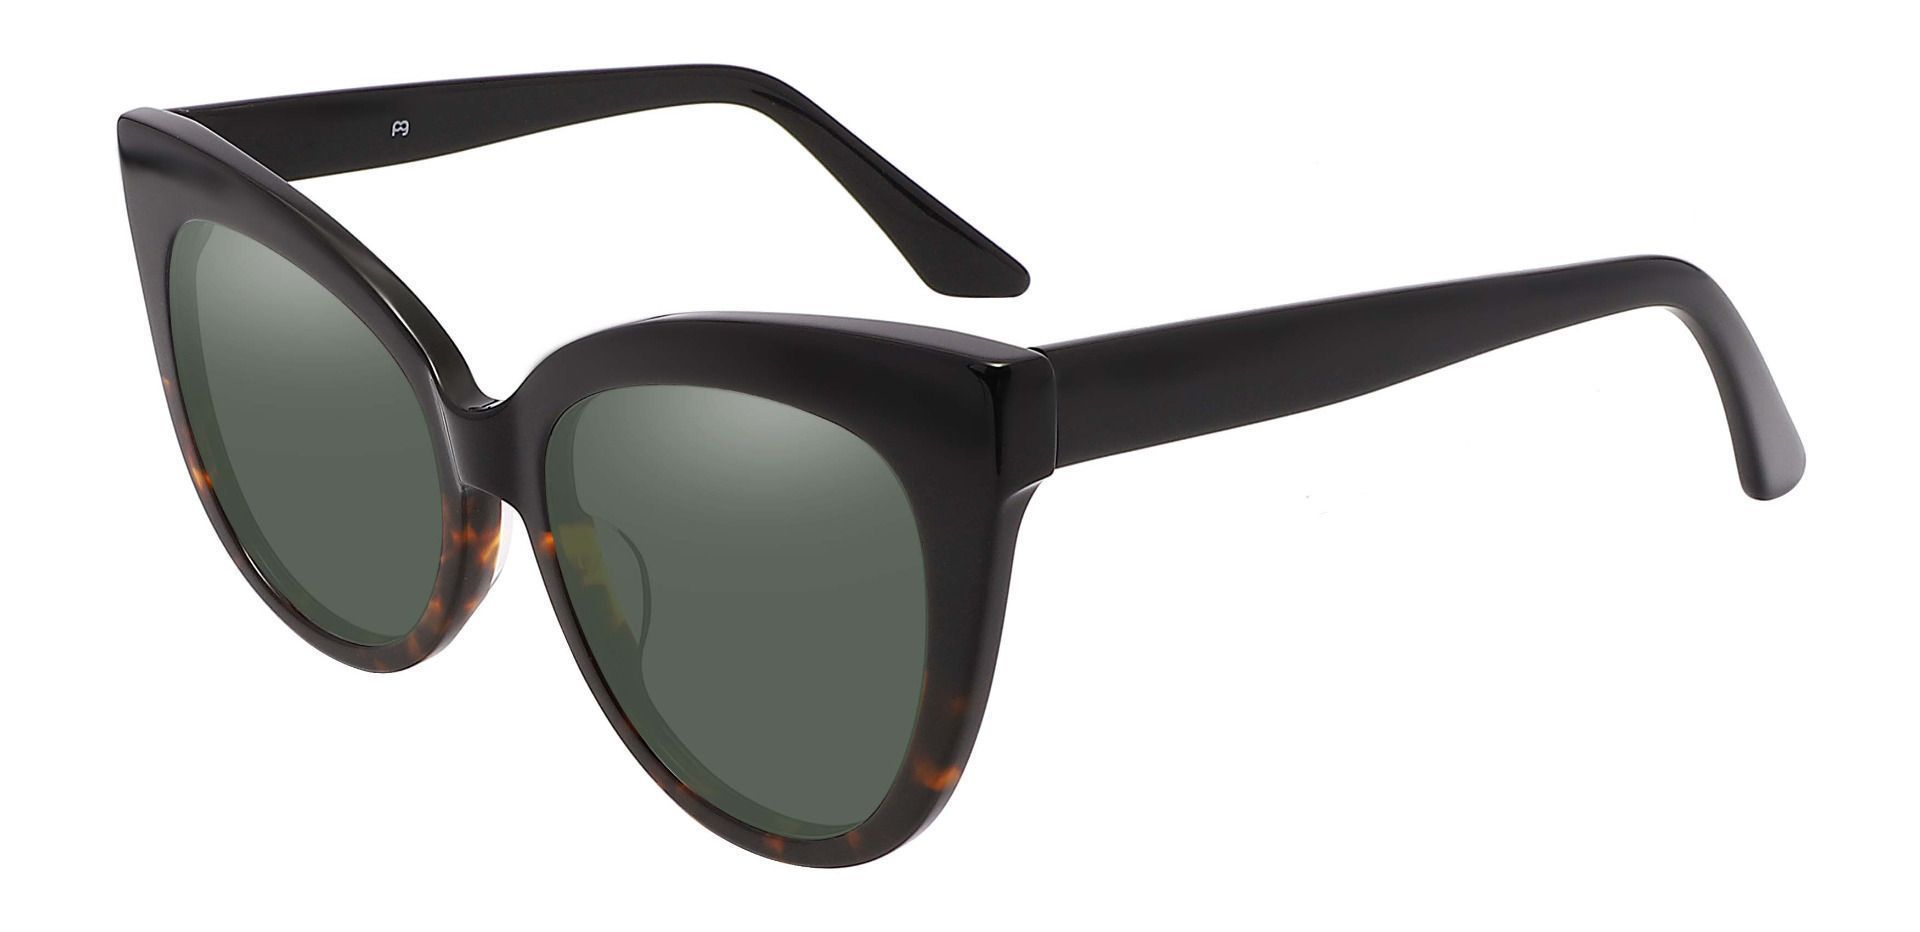 Sedalia Cat Eye Progressive Sunglasses - Black Frame With Green Lenses